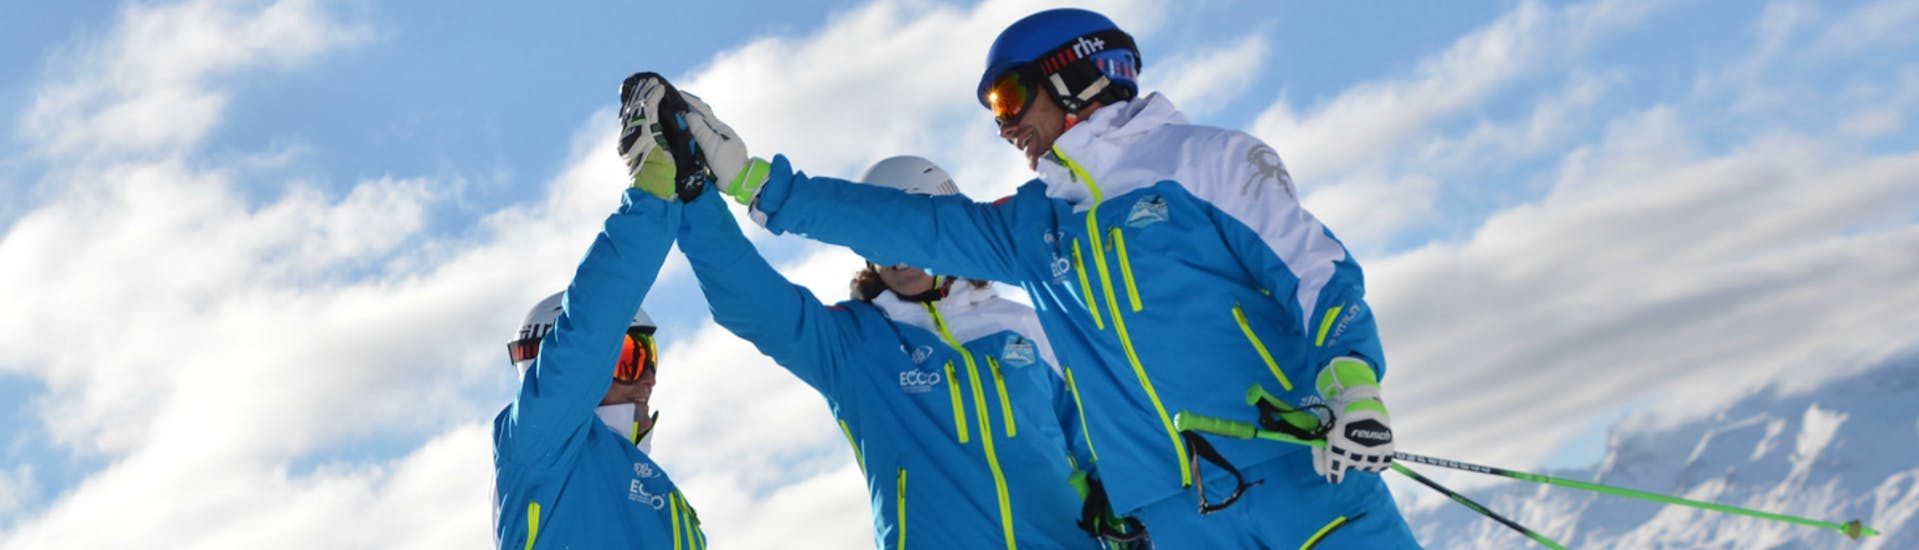 Drei Skilehrer der Skischule Silvaplana Top Snowsports geben sich während dem Kinder-Skikurs für alle Levels ein High-Five.